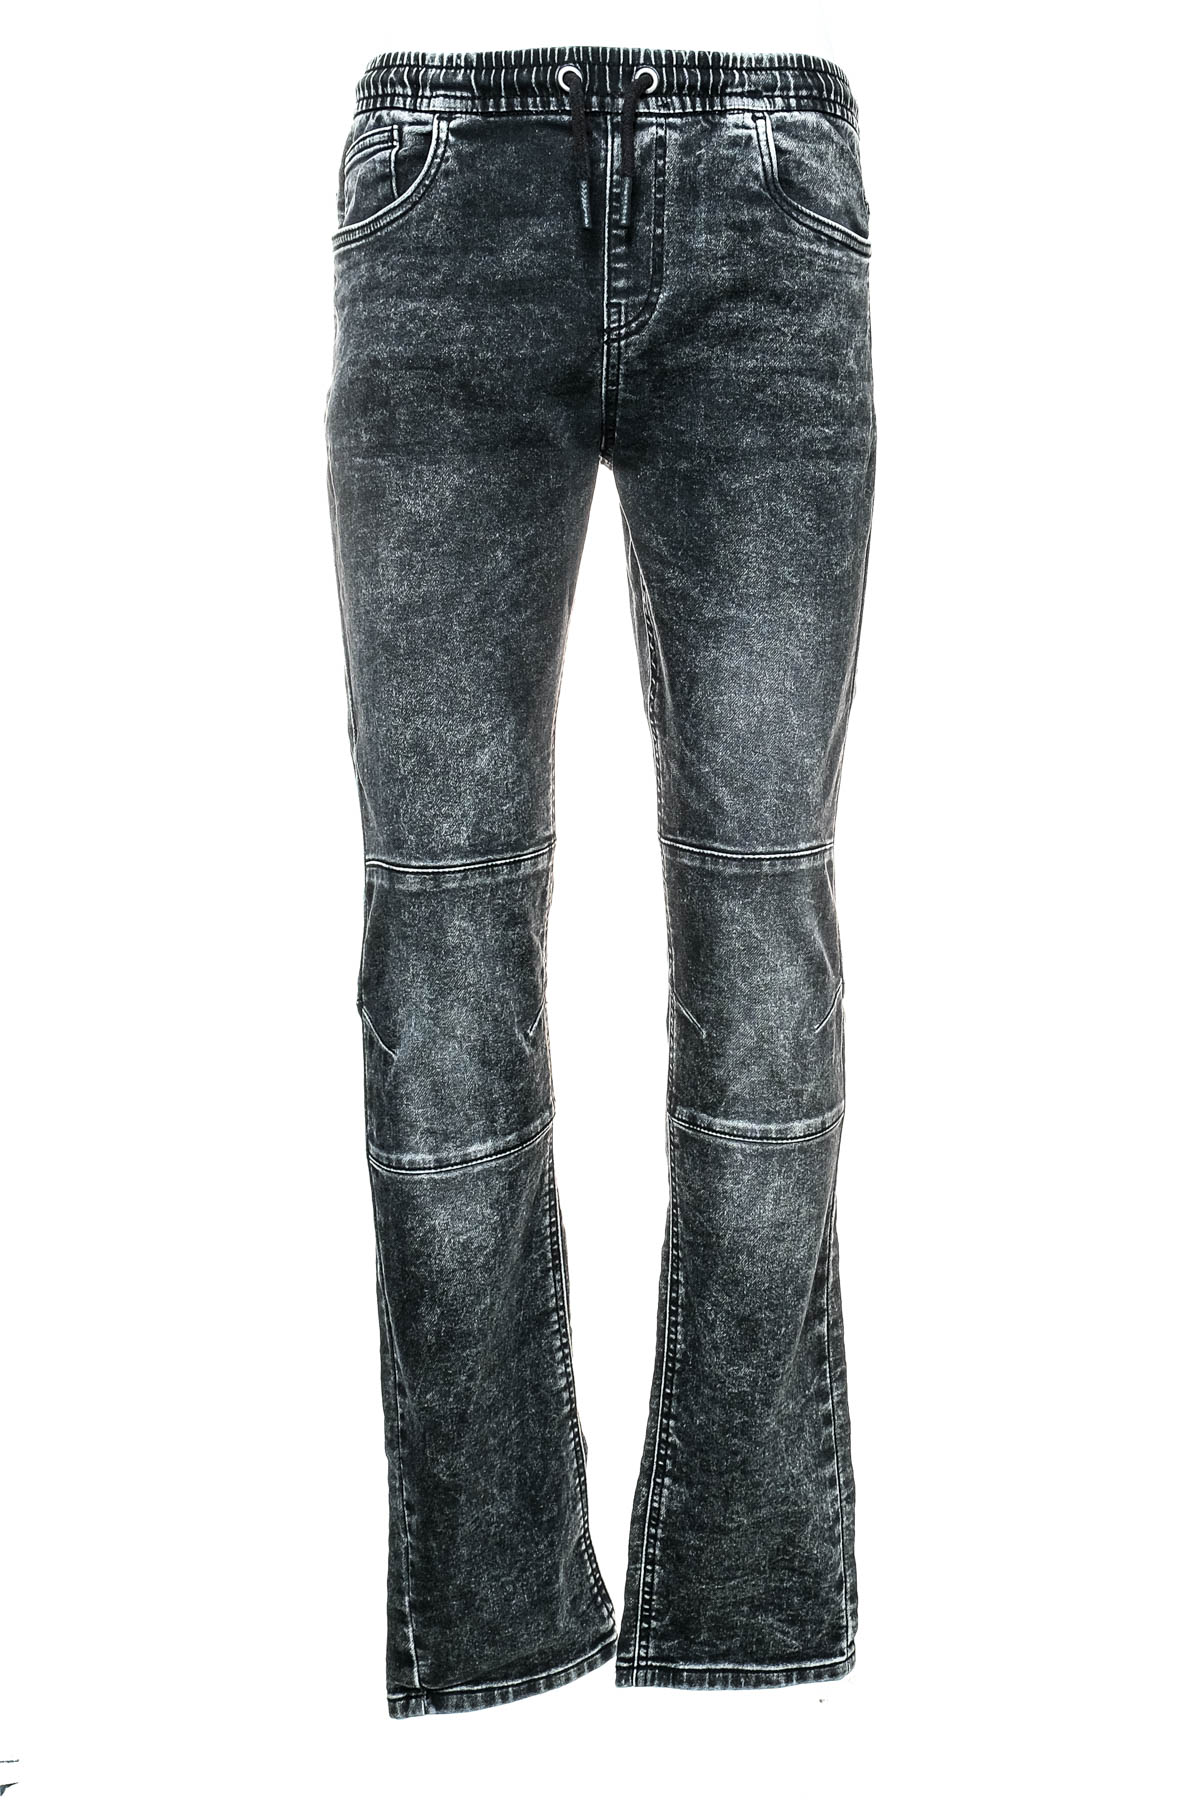 Jeans pentru băiat - C&A - 0